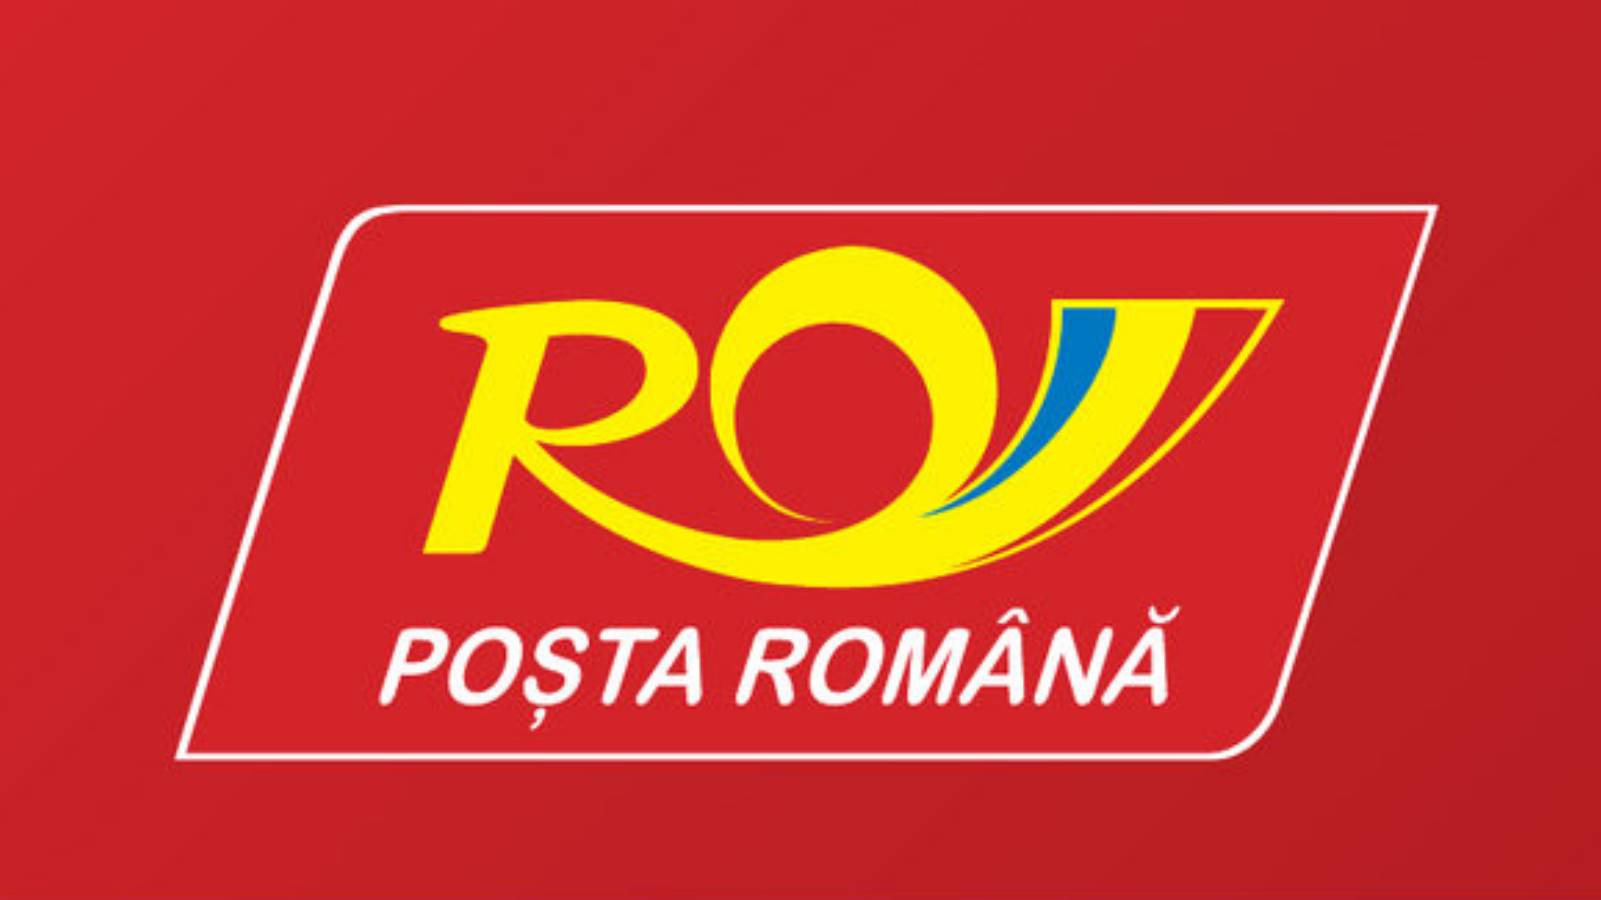 Livraison par la poste roumaine le jour même